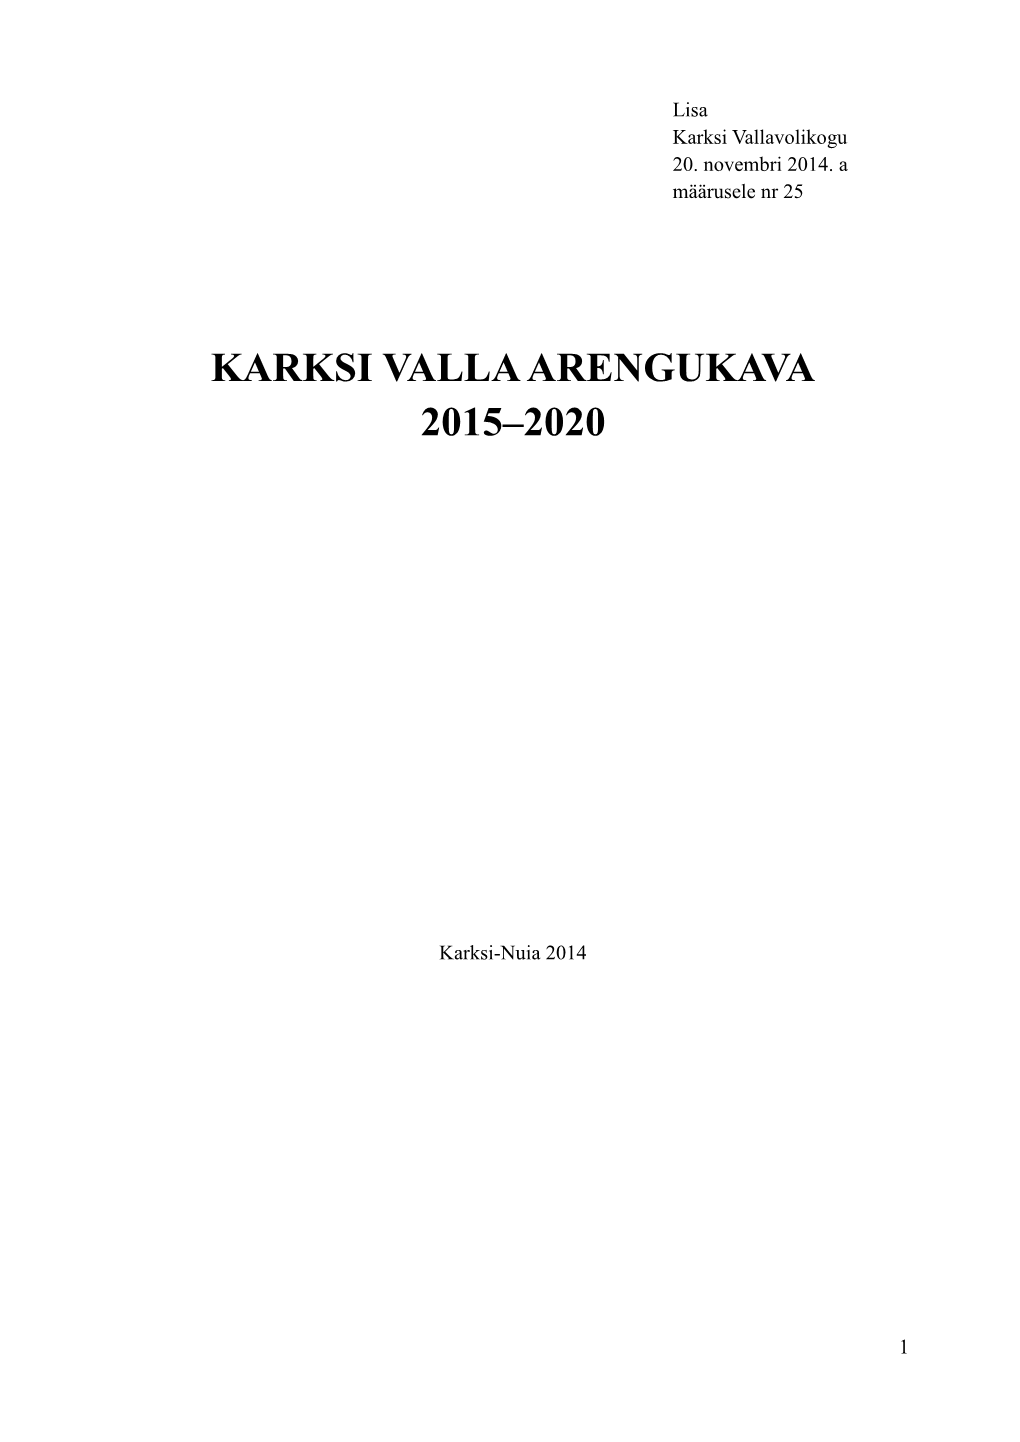 Karksi Valla Arengukava 2015–2020